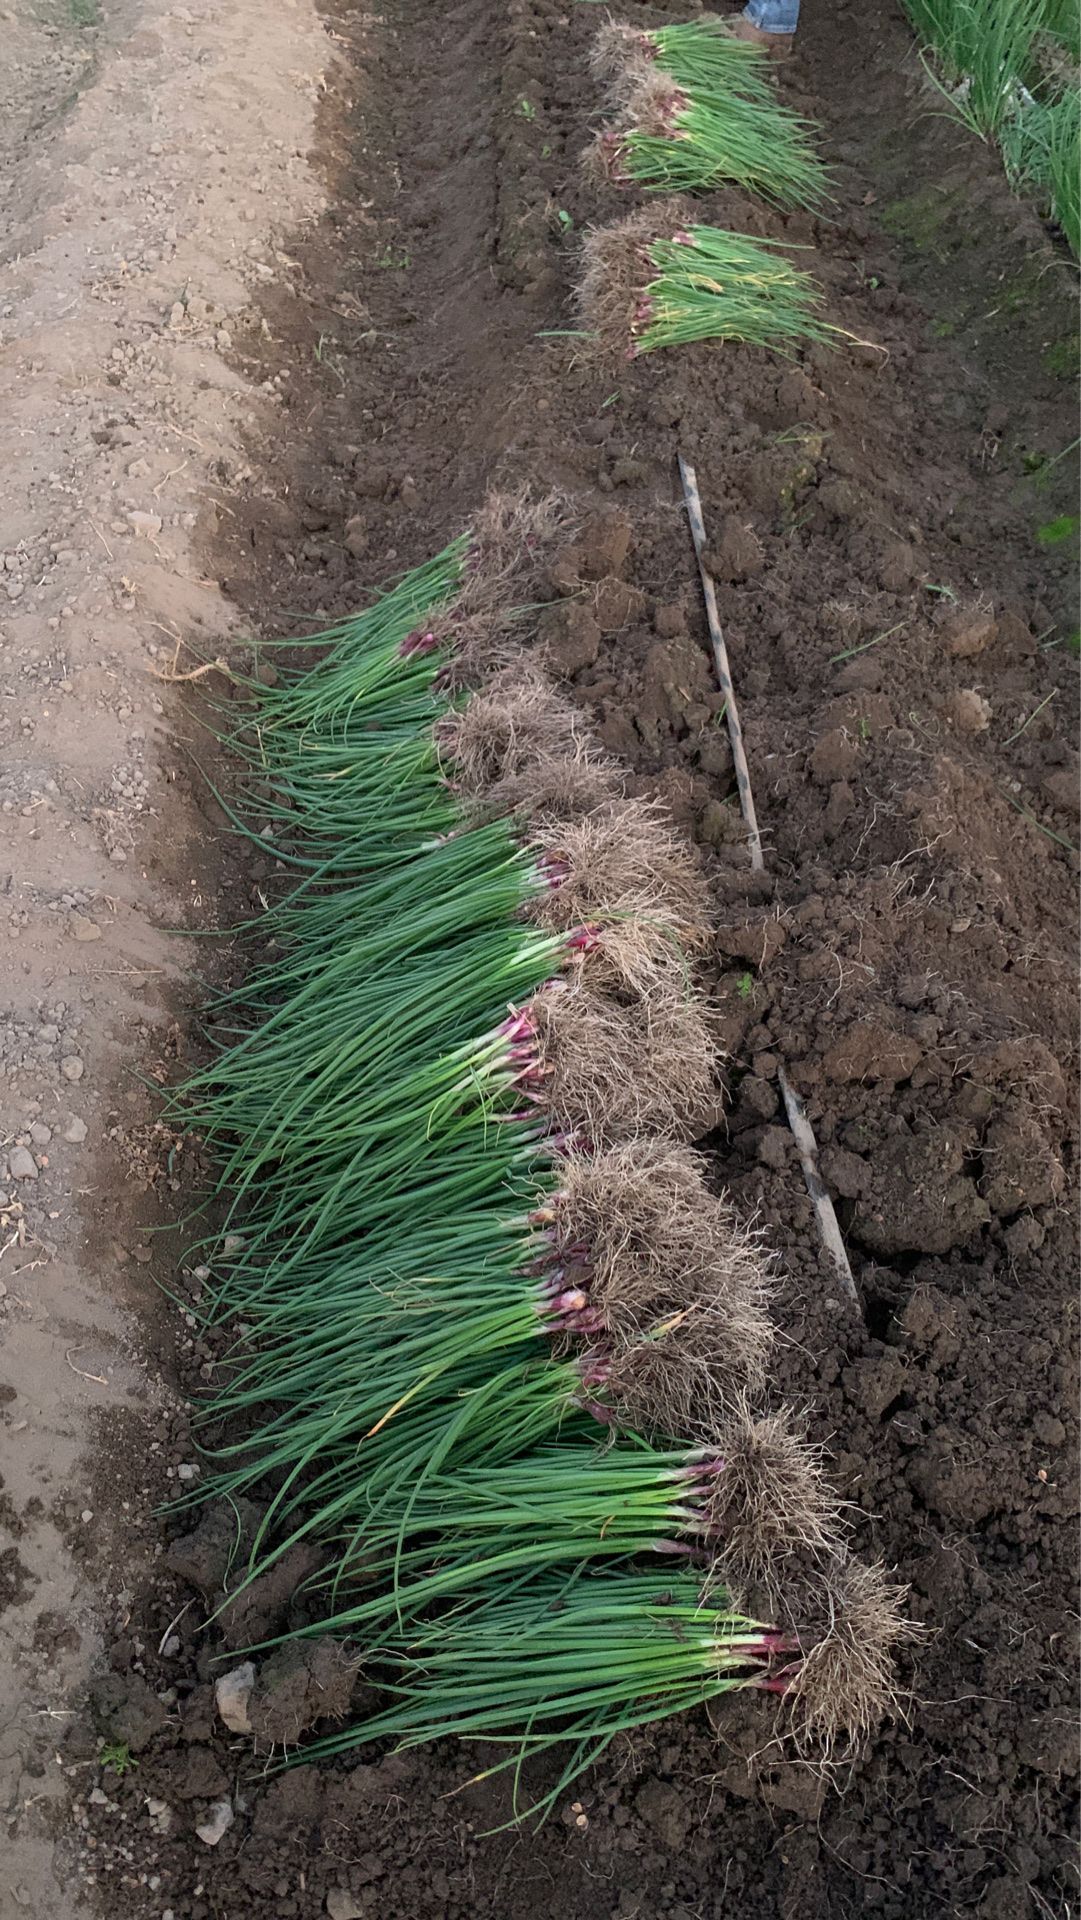 Purple onion transplants 1000-1200 plants in case